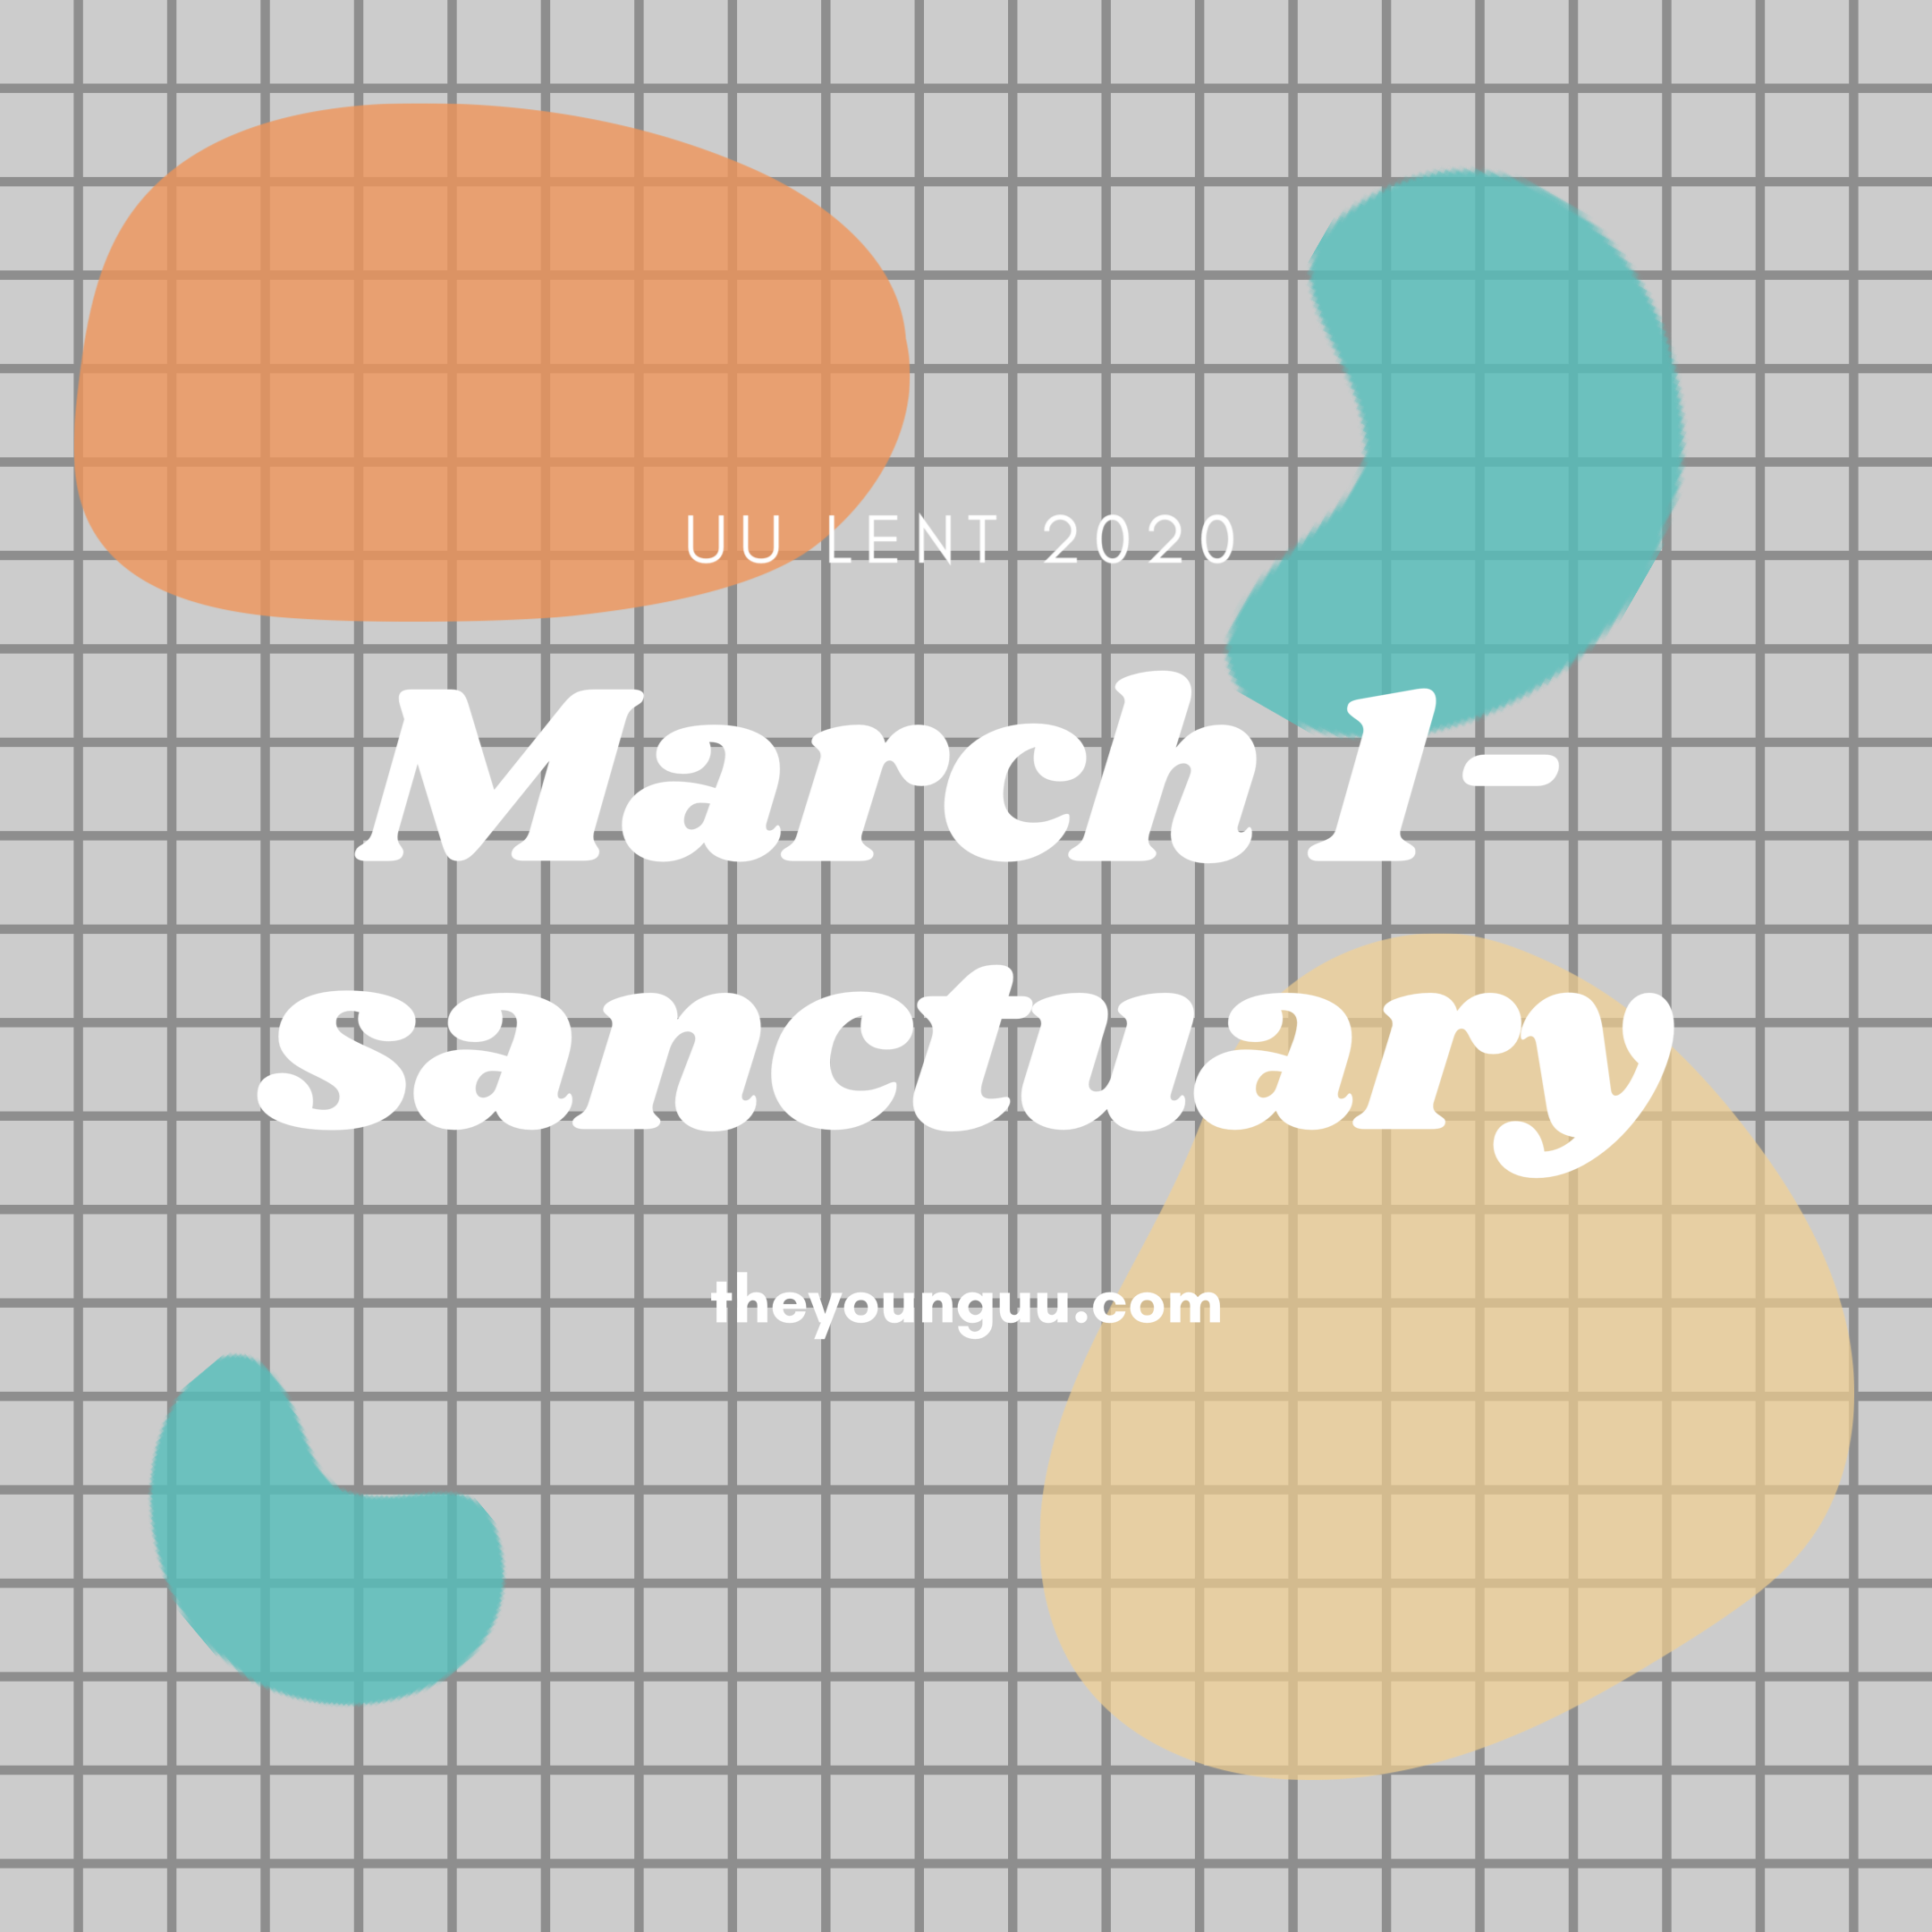 March 1-sanctuary